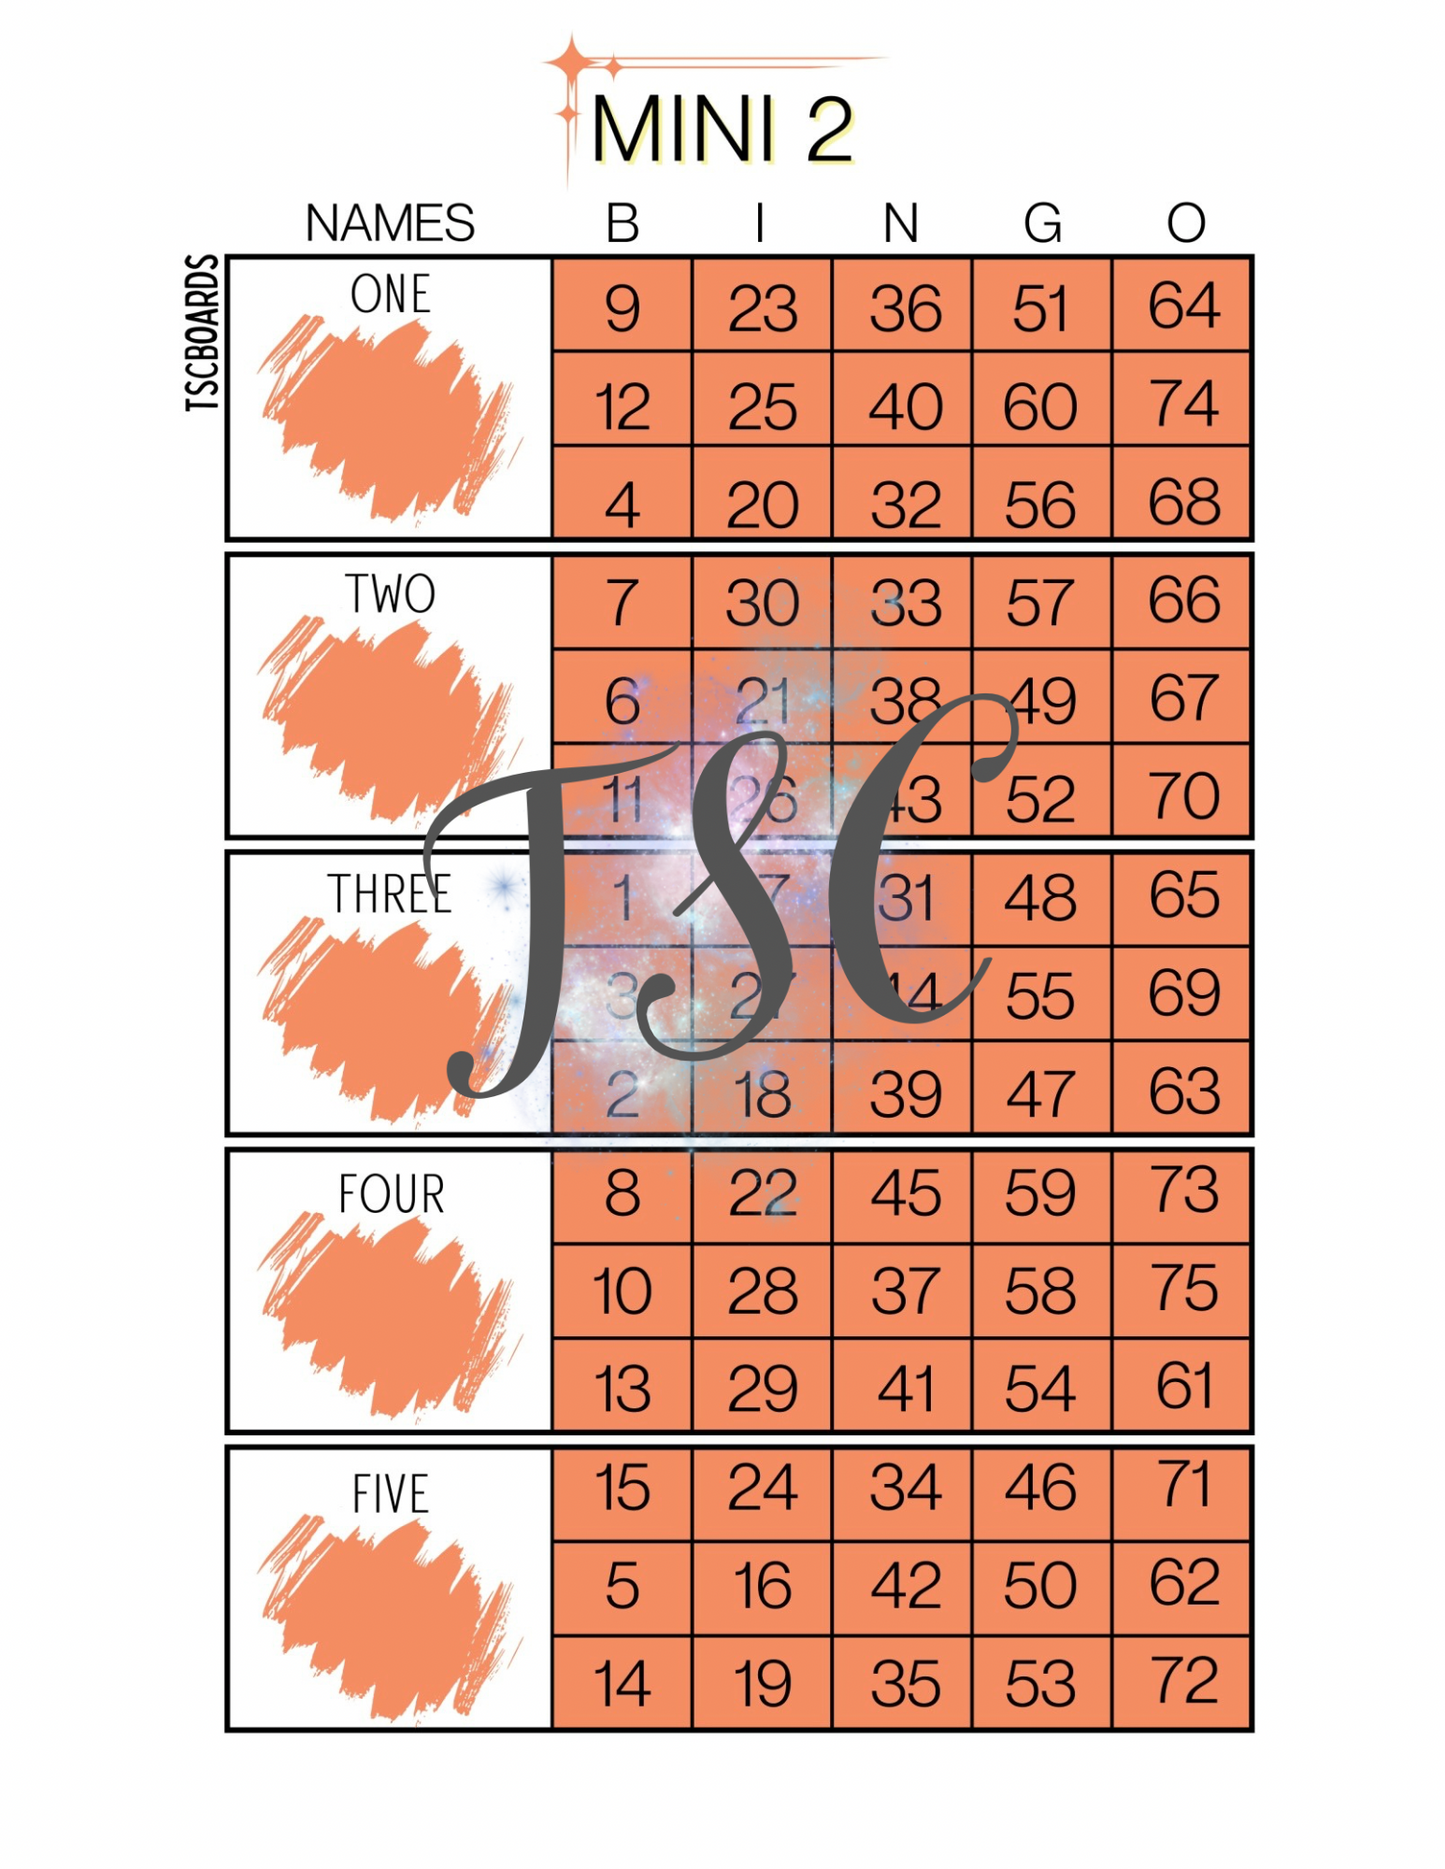 Mini 2 Block Bingo Board 1-75 Ball